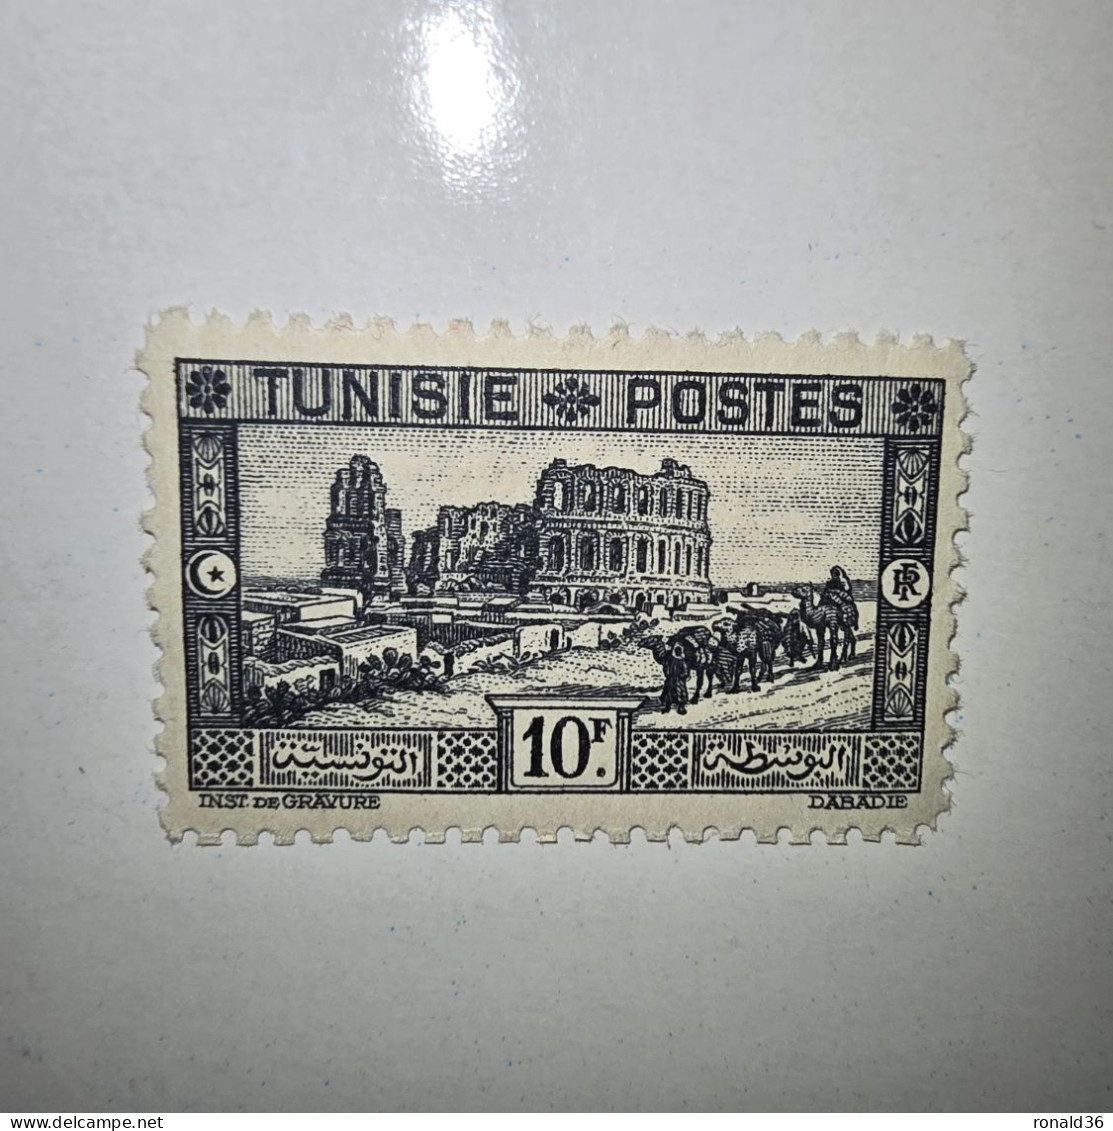 TUNISIE POSTES N° 179 10 Francs Noir F 1888 1938 FRANCE Timbre Poste Francais Ex Colonie Française Protectorat - Neufs